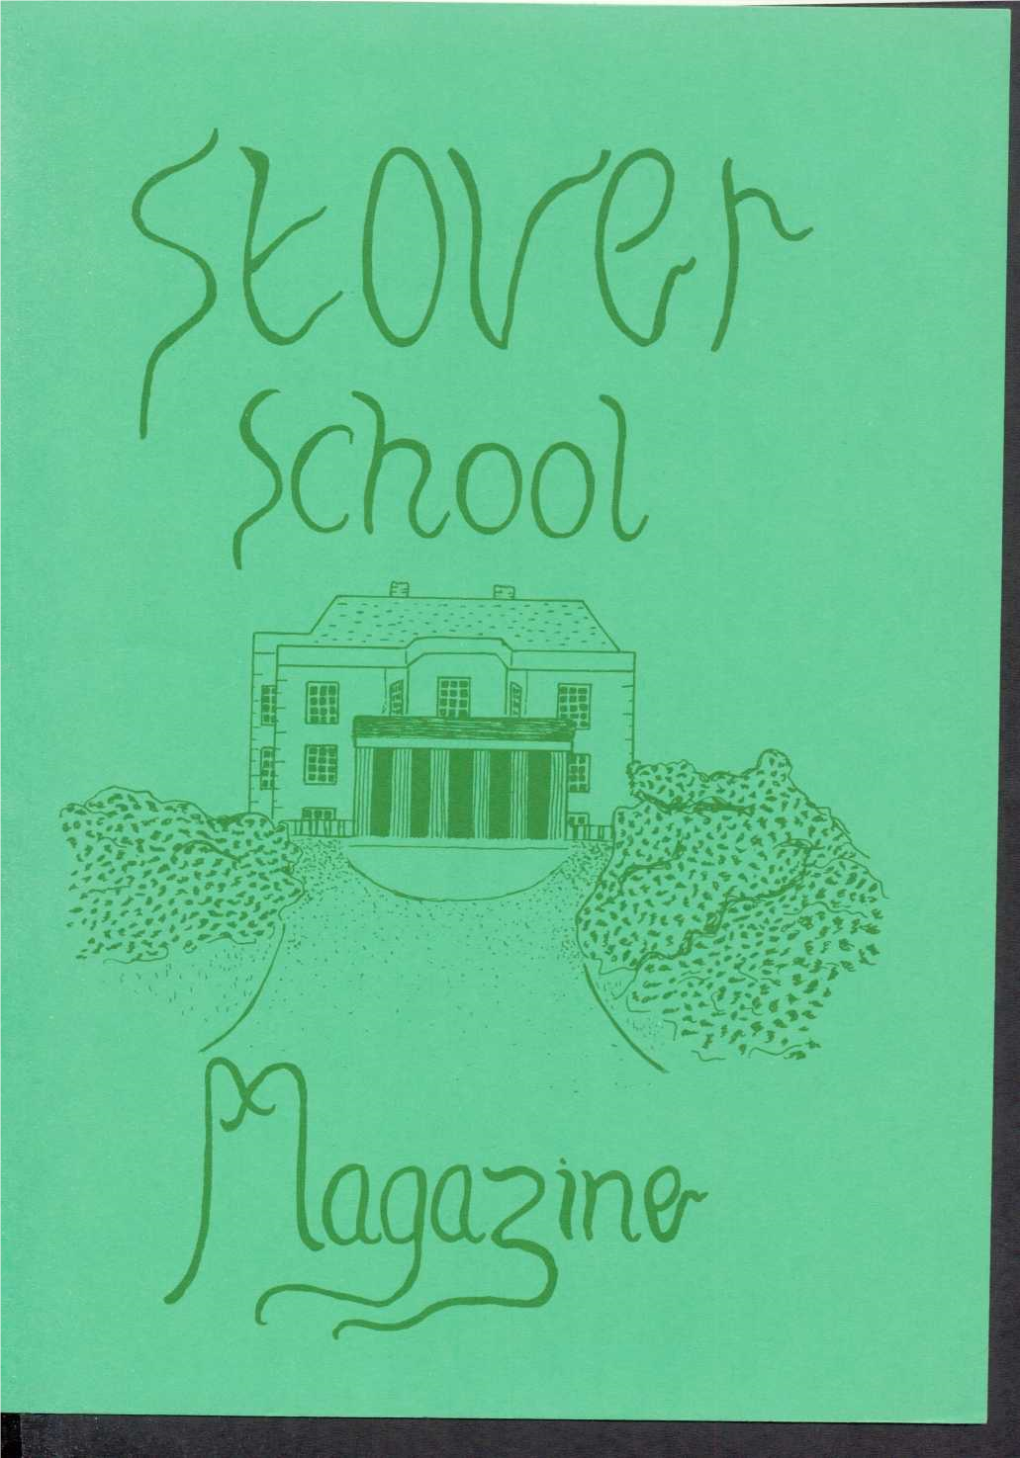 Stover School Magazine 1982-84